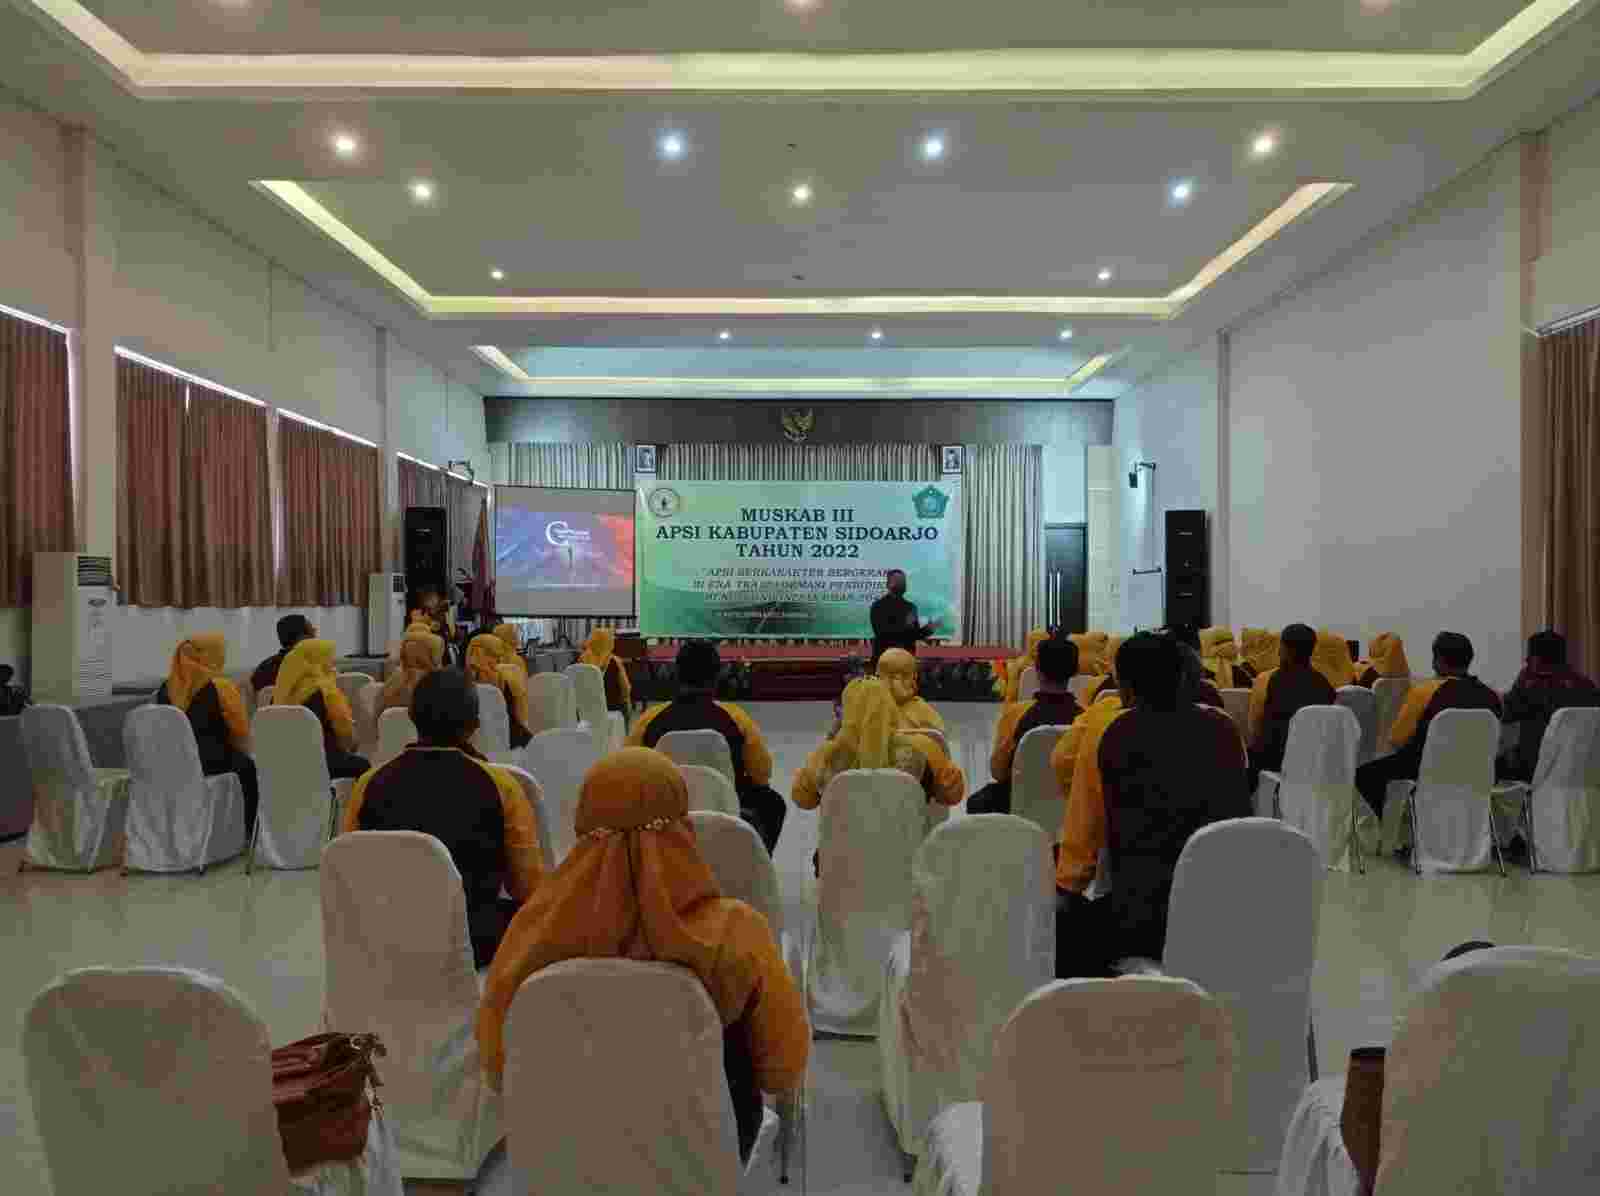 Muskab III APSI Kabupaten Sidoarjo, Panca Olah Institute Bersamai Para Pengawas Sekolah dalam Pelatihan Pendidikan Karakter dengan Metode Panca Olah